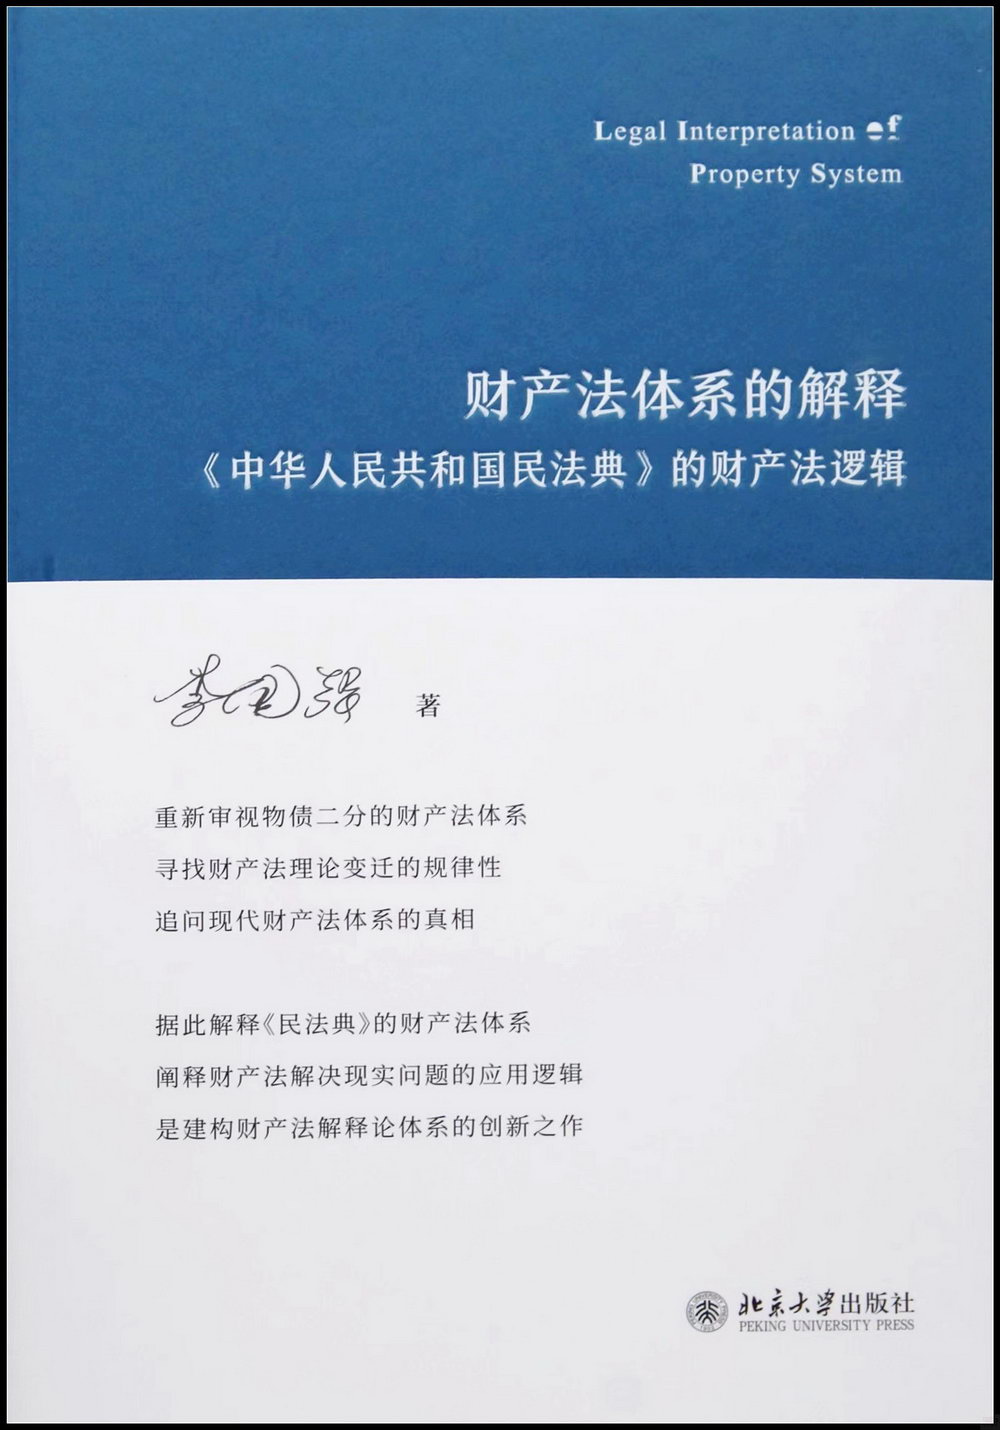 財產法體系的解釋：《中華人民共和國民法典》的財產法邏輯- 城邦阅读花园